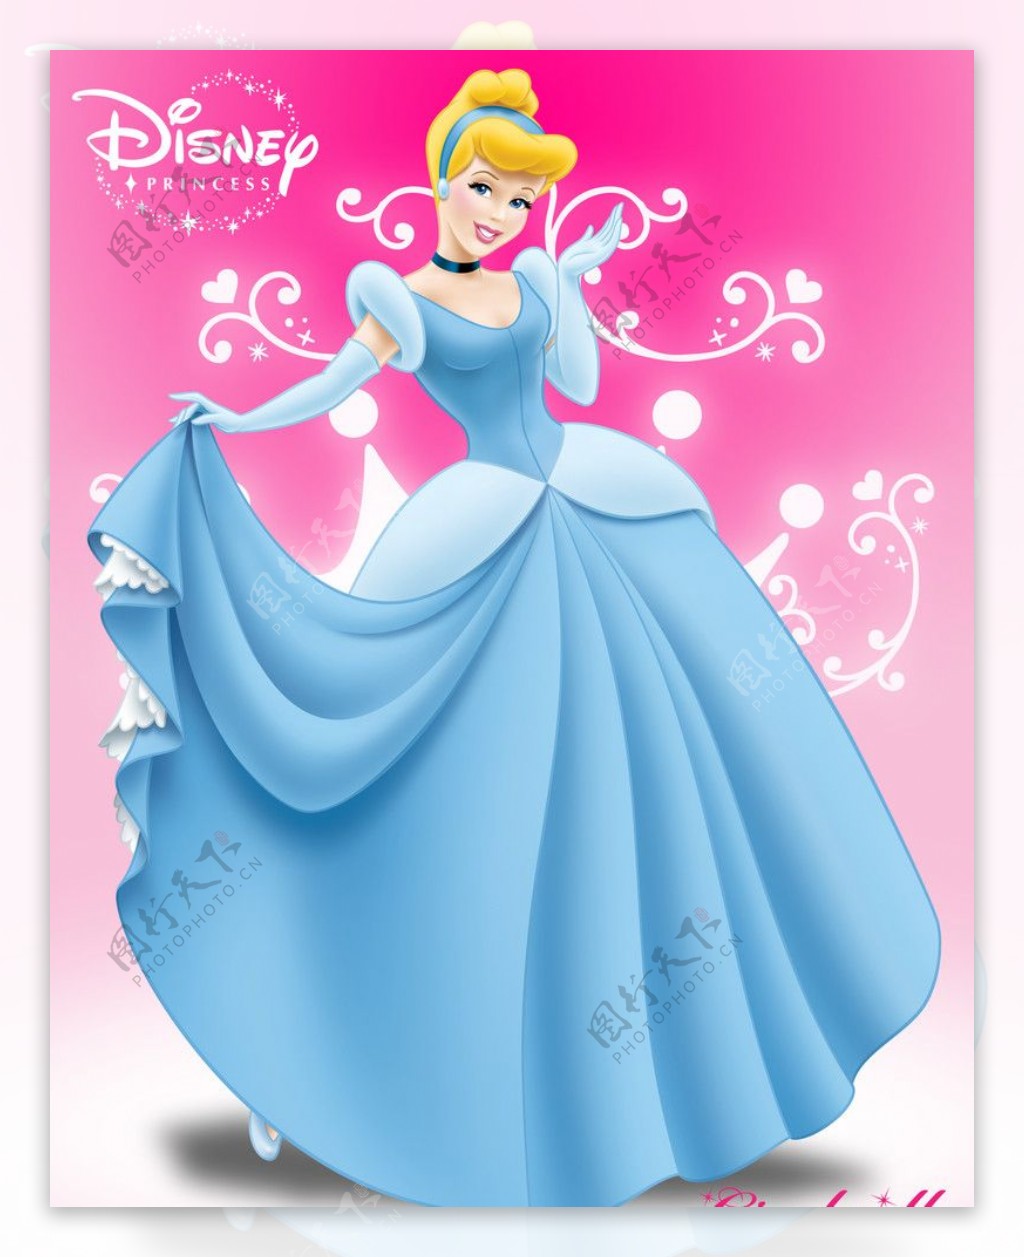 迪士尼水晶鞋公主仙蒂Cinderella2010年B版图片